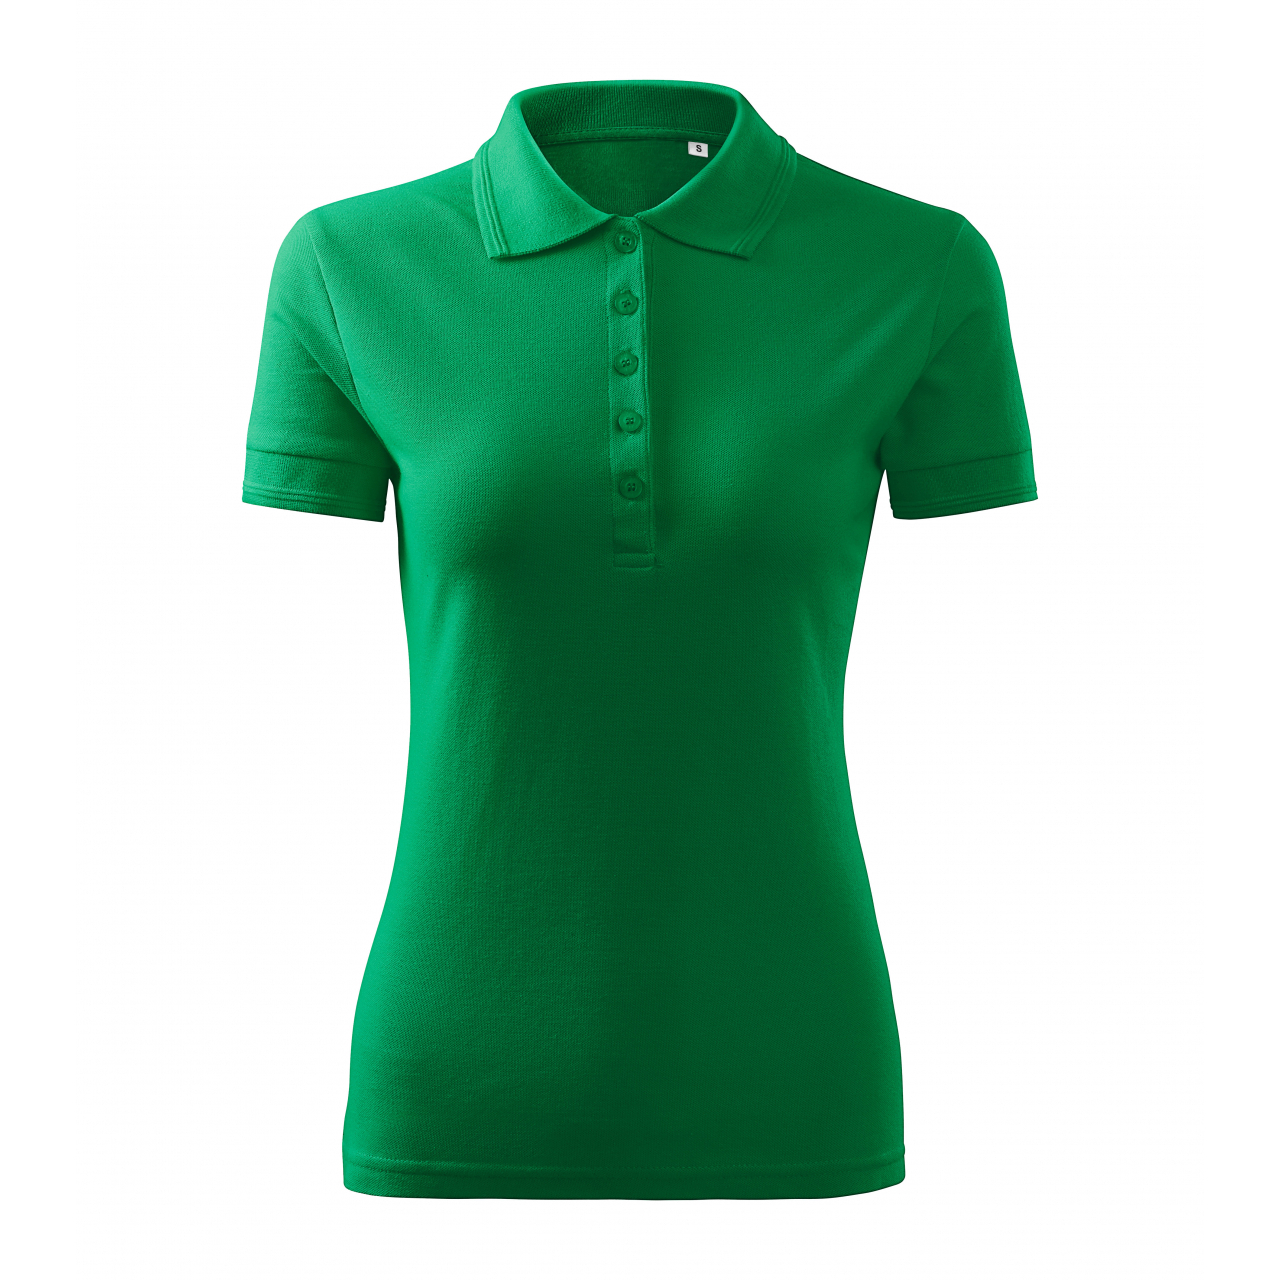 Polokošile dámská Malfini Pique Polo Free - zelená, XL